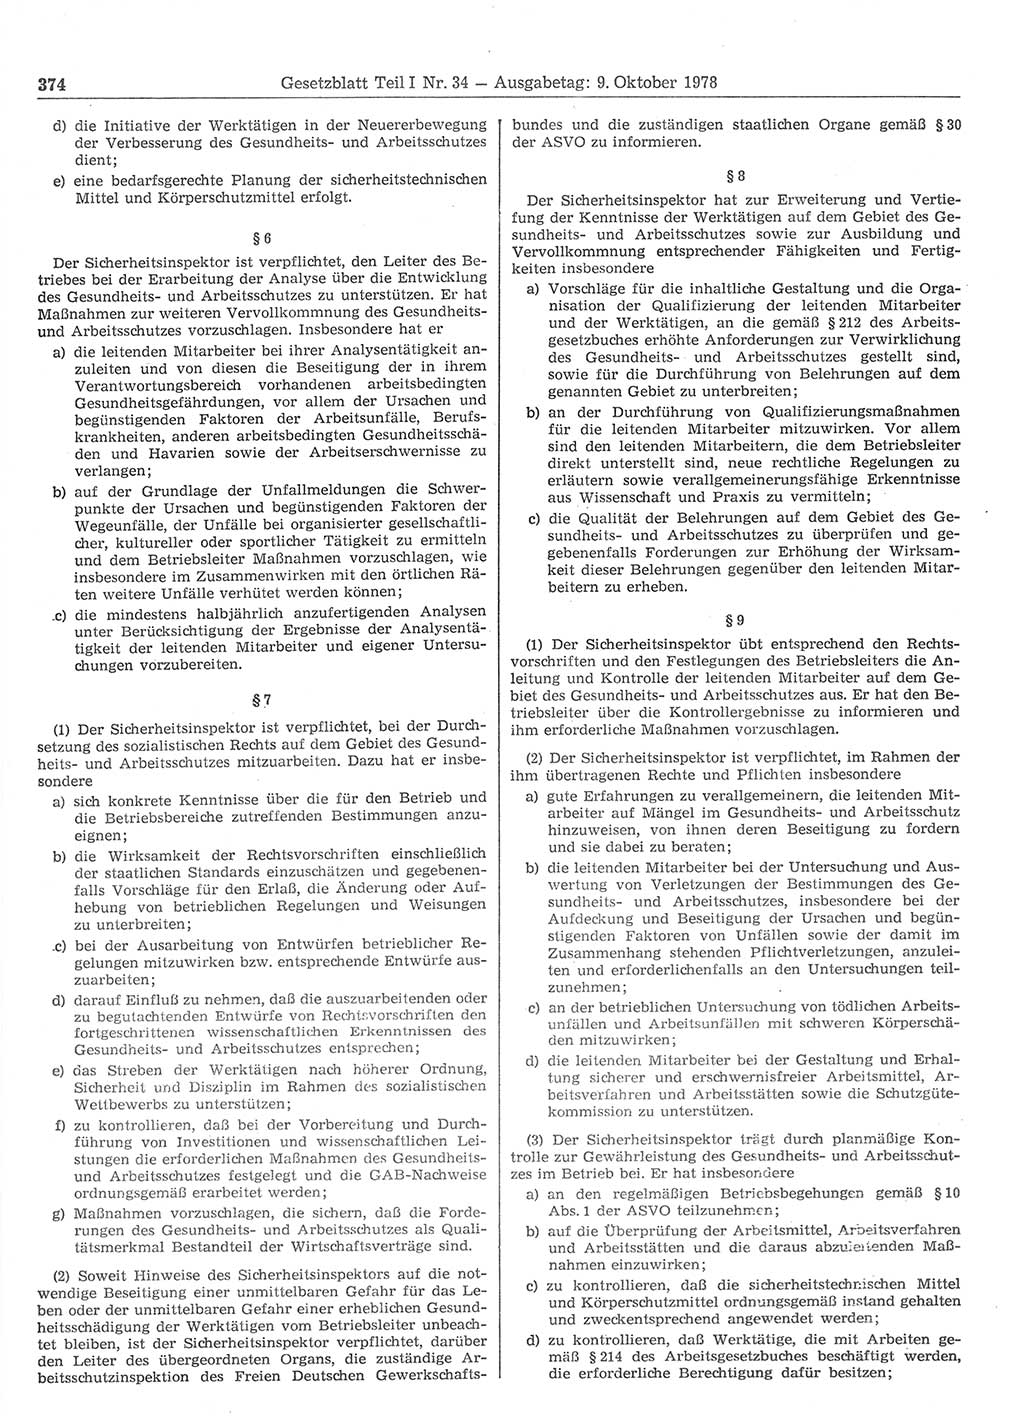 Gesetzblatt (GBl.) der Deutschen Demokratischen Republik (DDR) Teil Ⅰ 1978, Seite 374 (GBl. DDR Ⅰ 1978, S. 374)